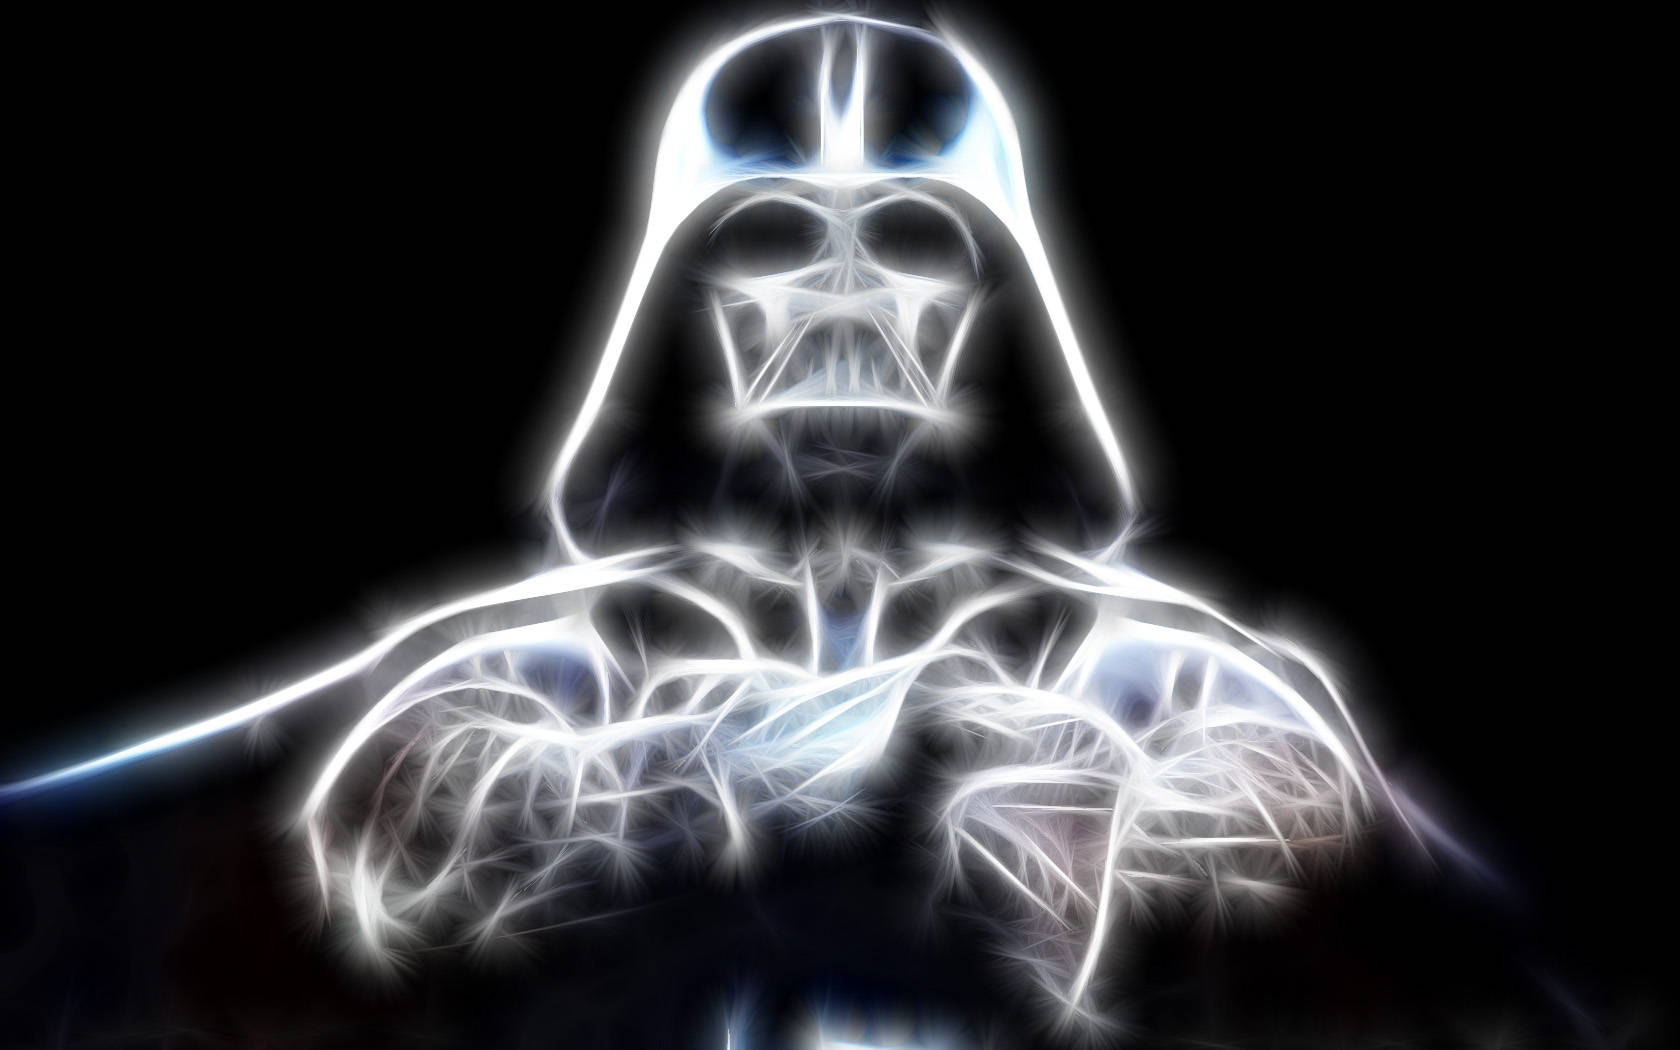 Fondode Pantalla Brillante De Darth Vader En Un Paisaje De Star Wars. Fondo de pantalla